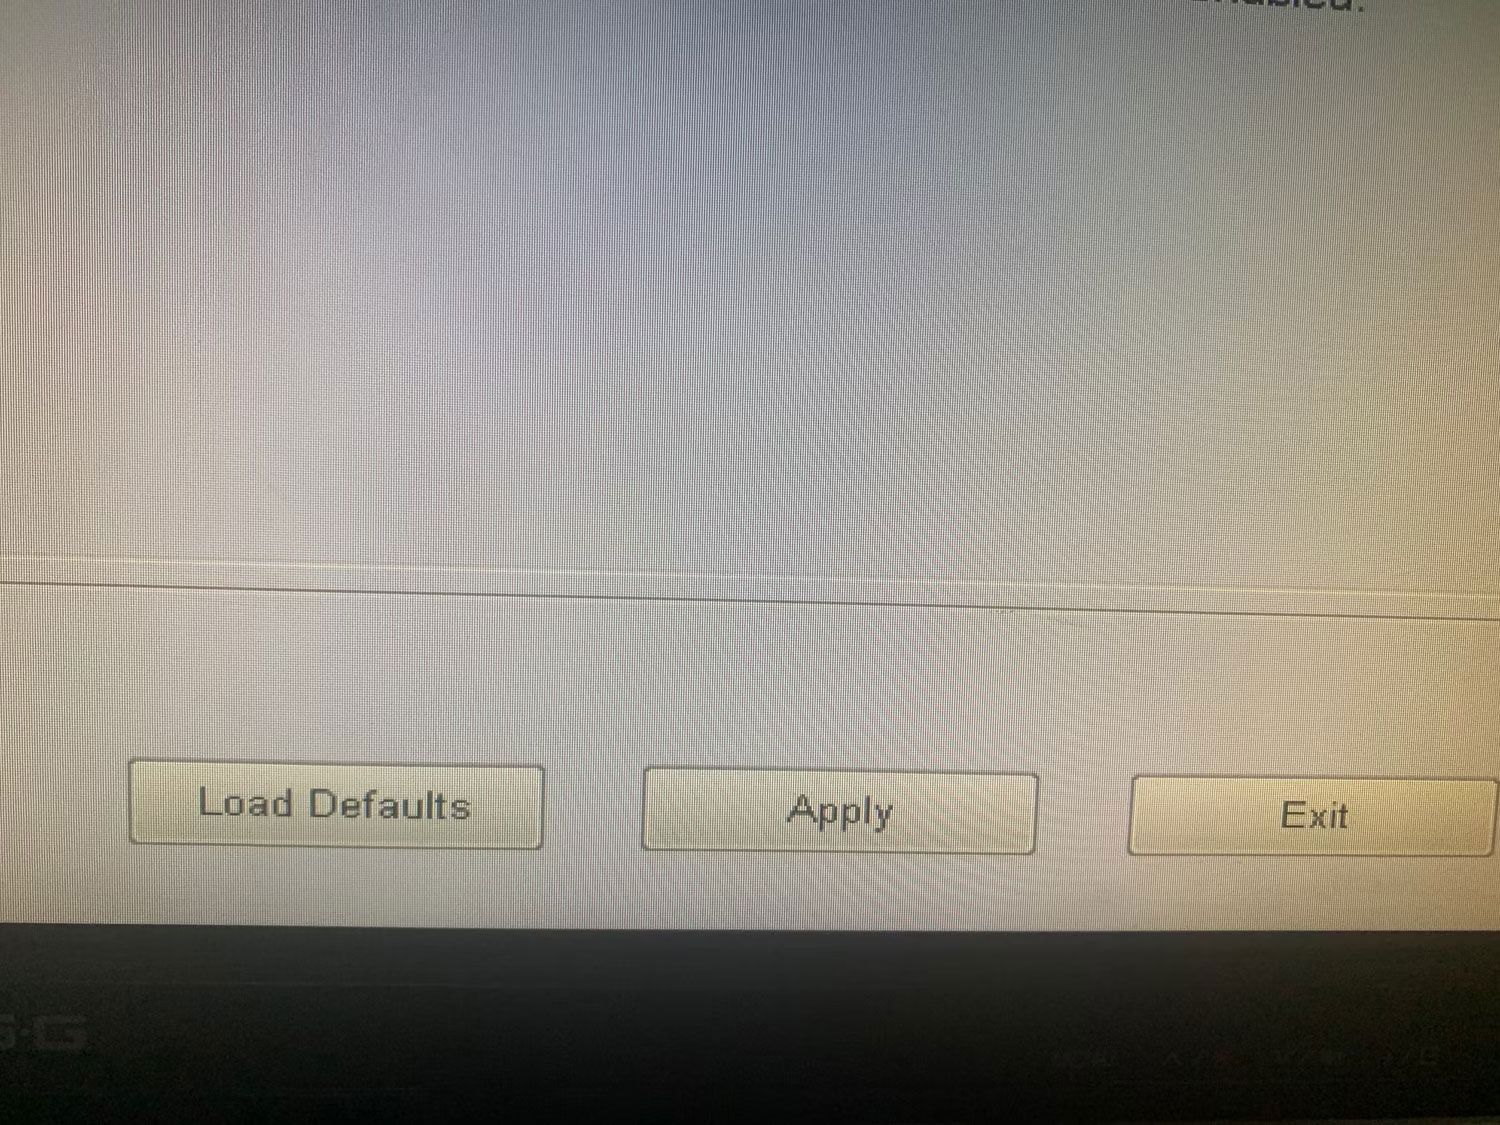 Nhấp vào Load Defaults để reset cài đặt BIOS